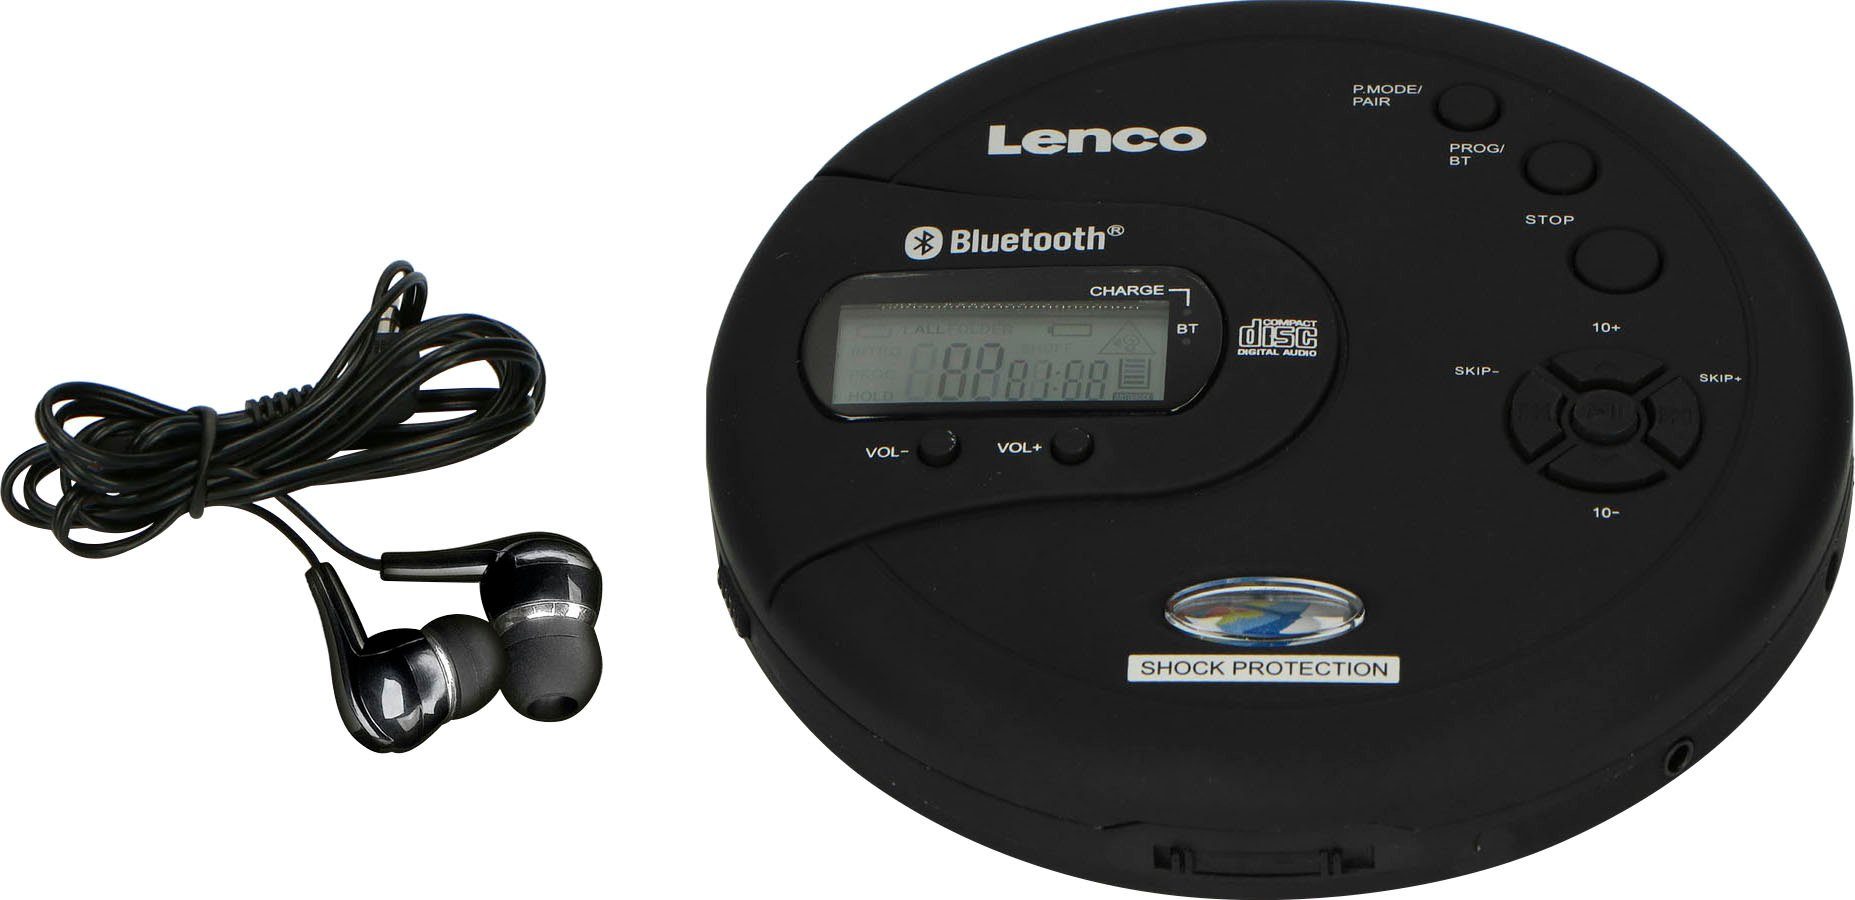 CD-300 Lenco CD-Player tragbarer